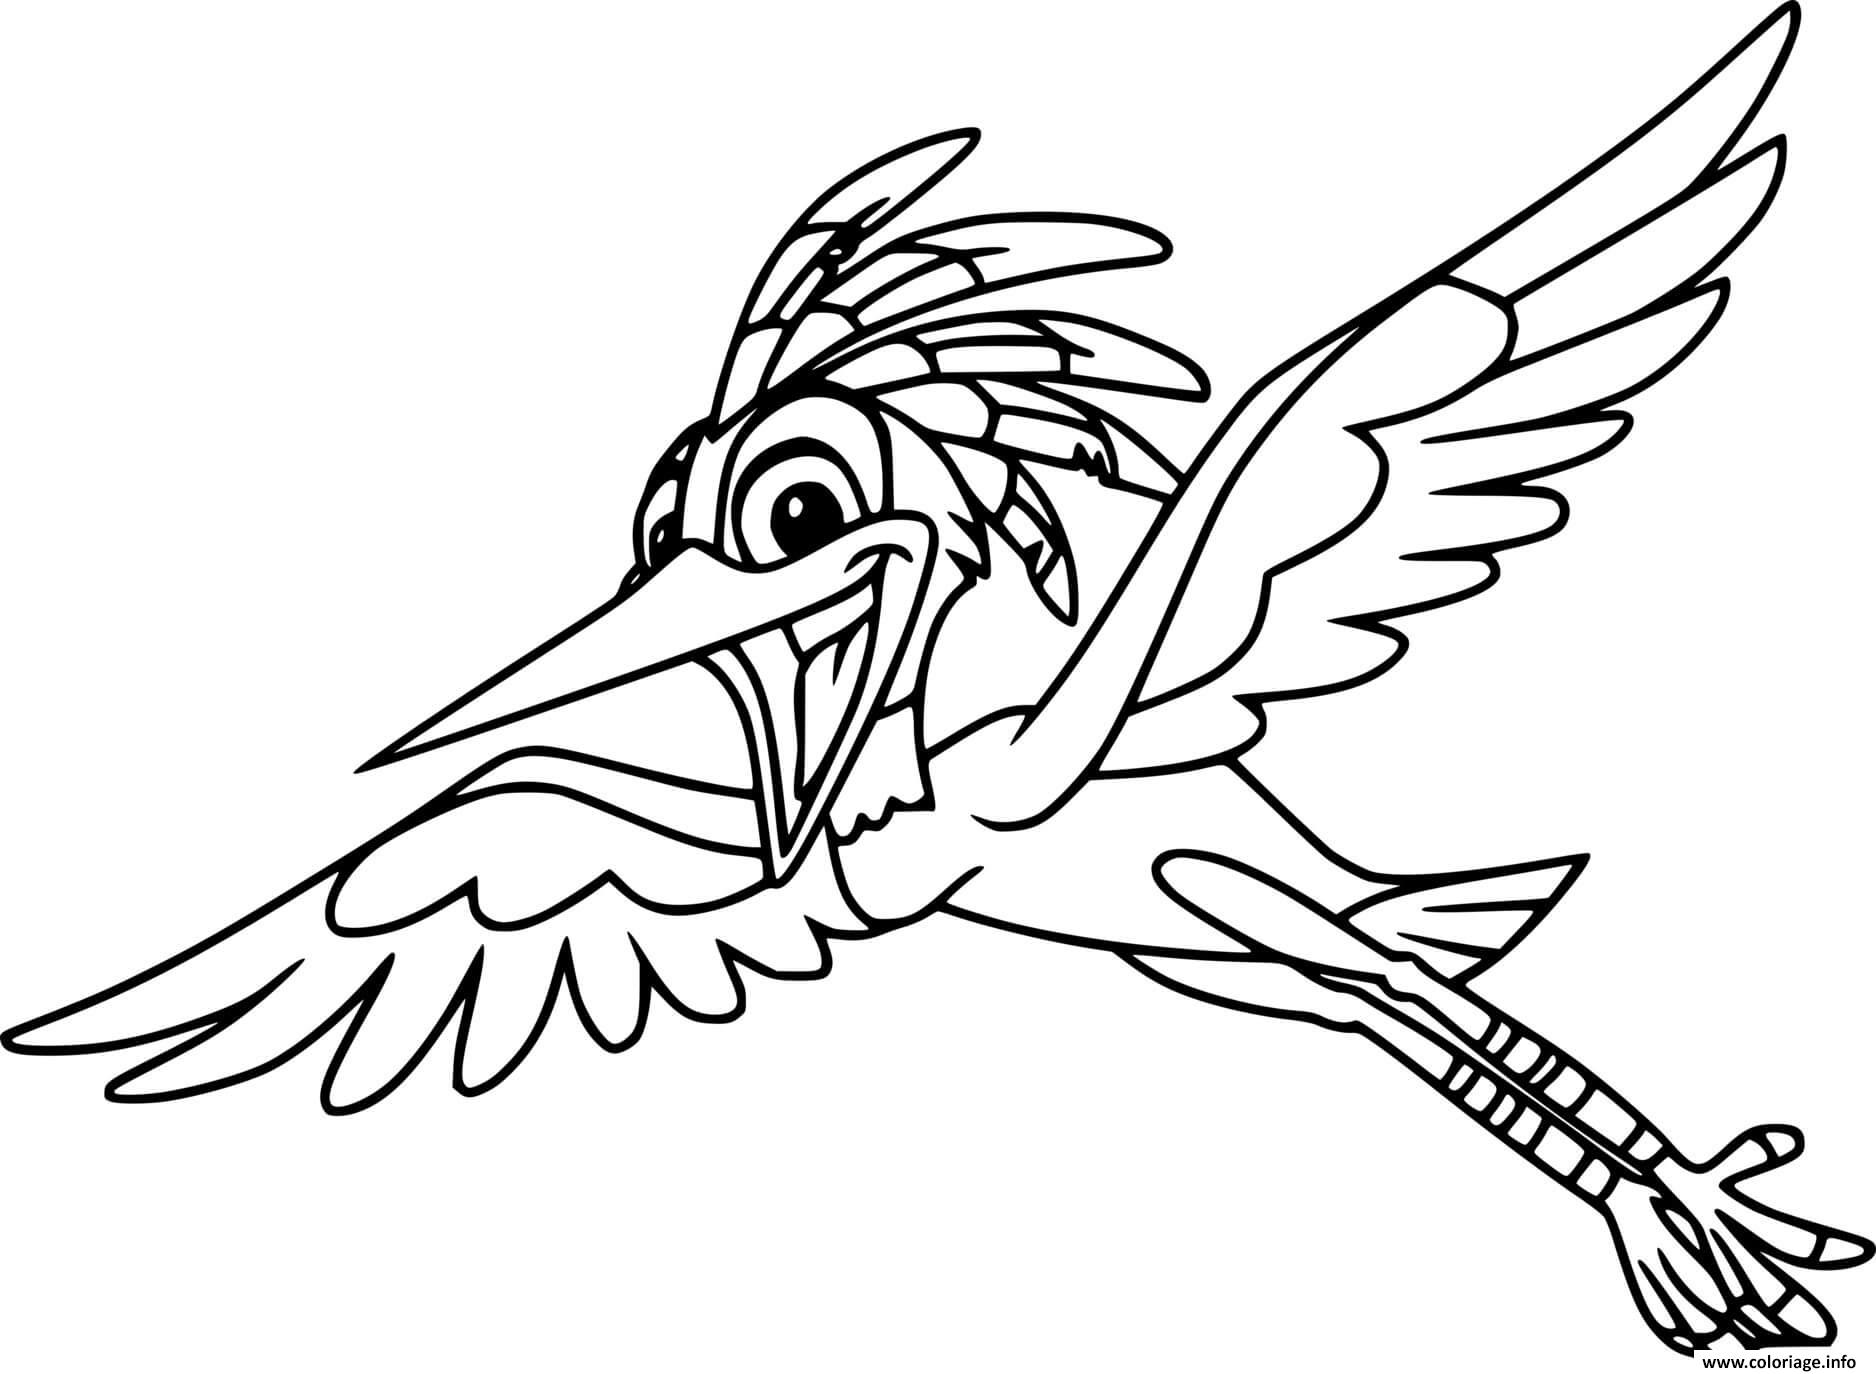 Dessin ono egret flying Coloriage Gratuit à Imprimer